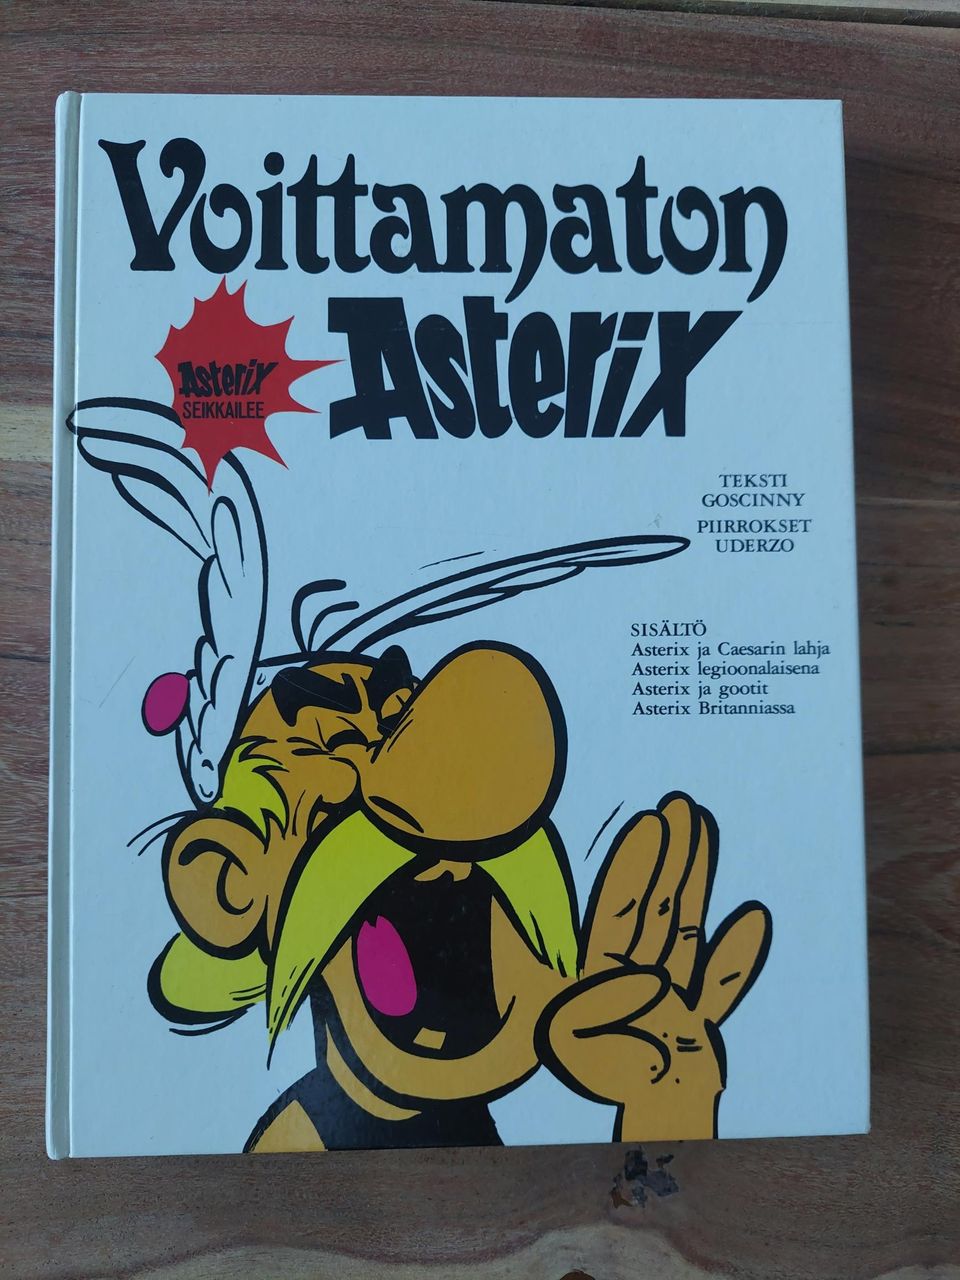 Voittamaton Asterix -sarjakuvat